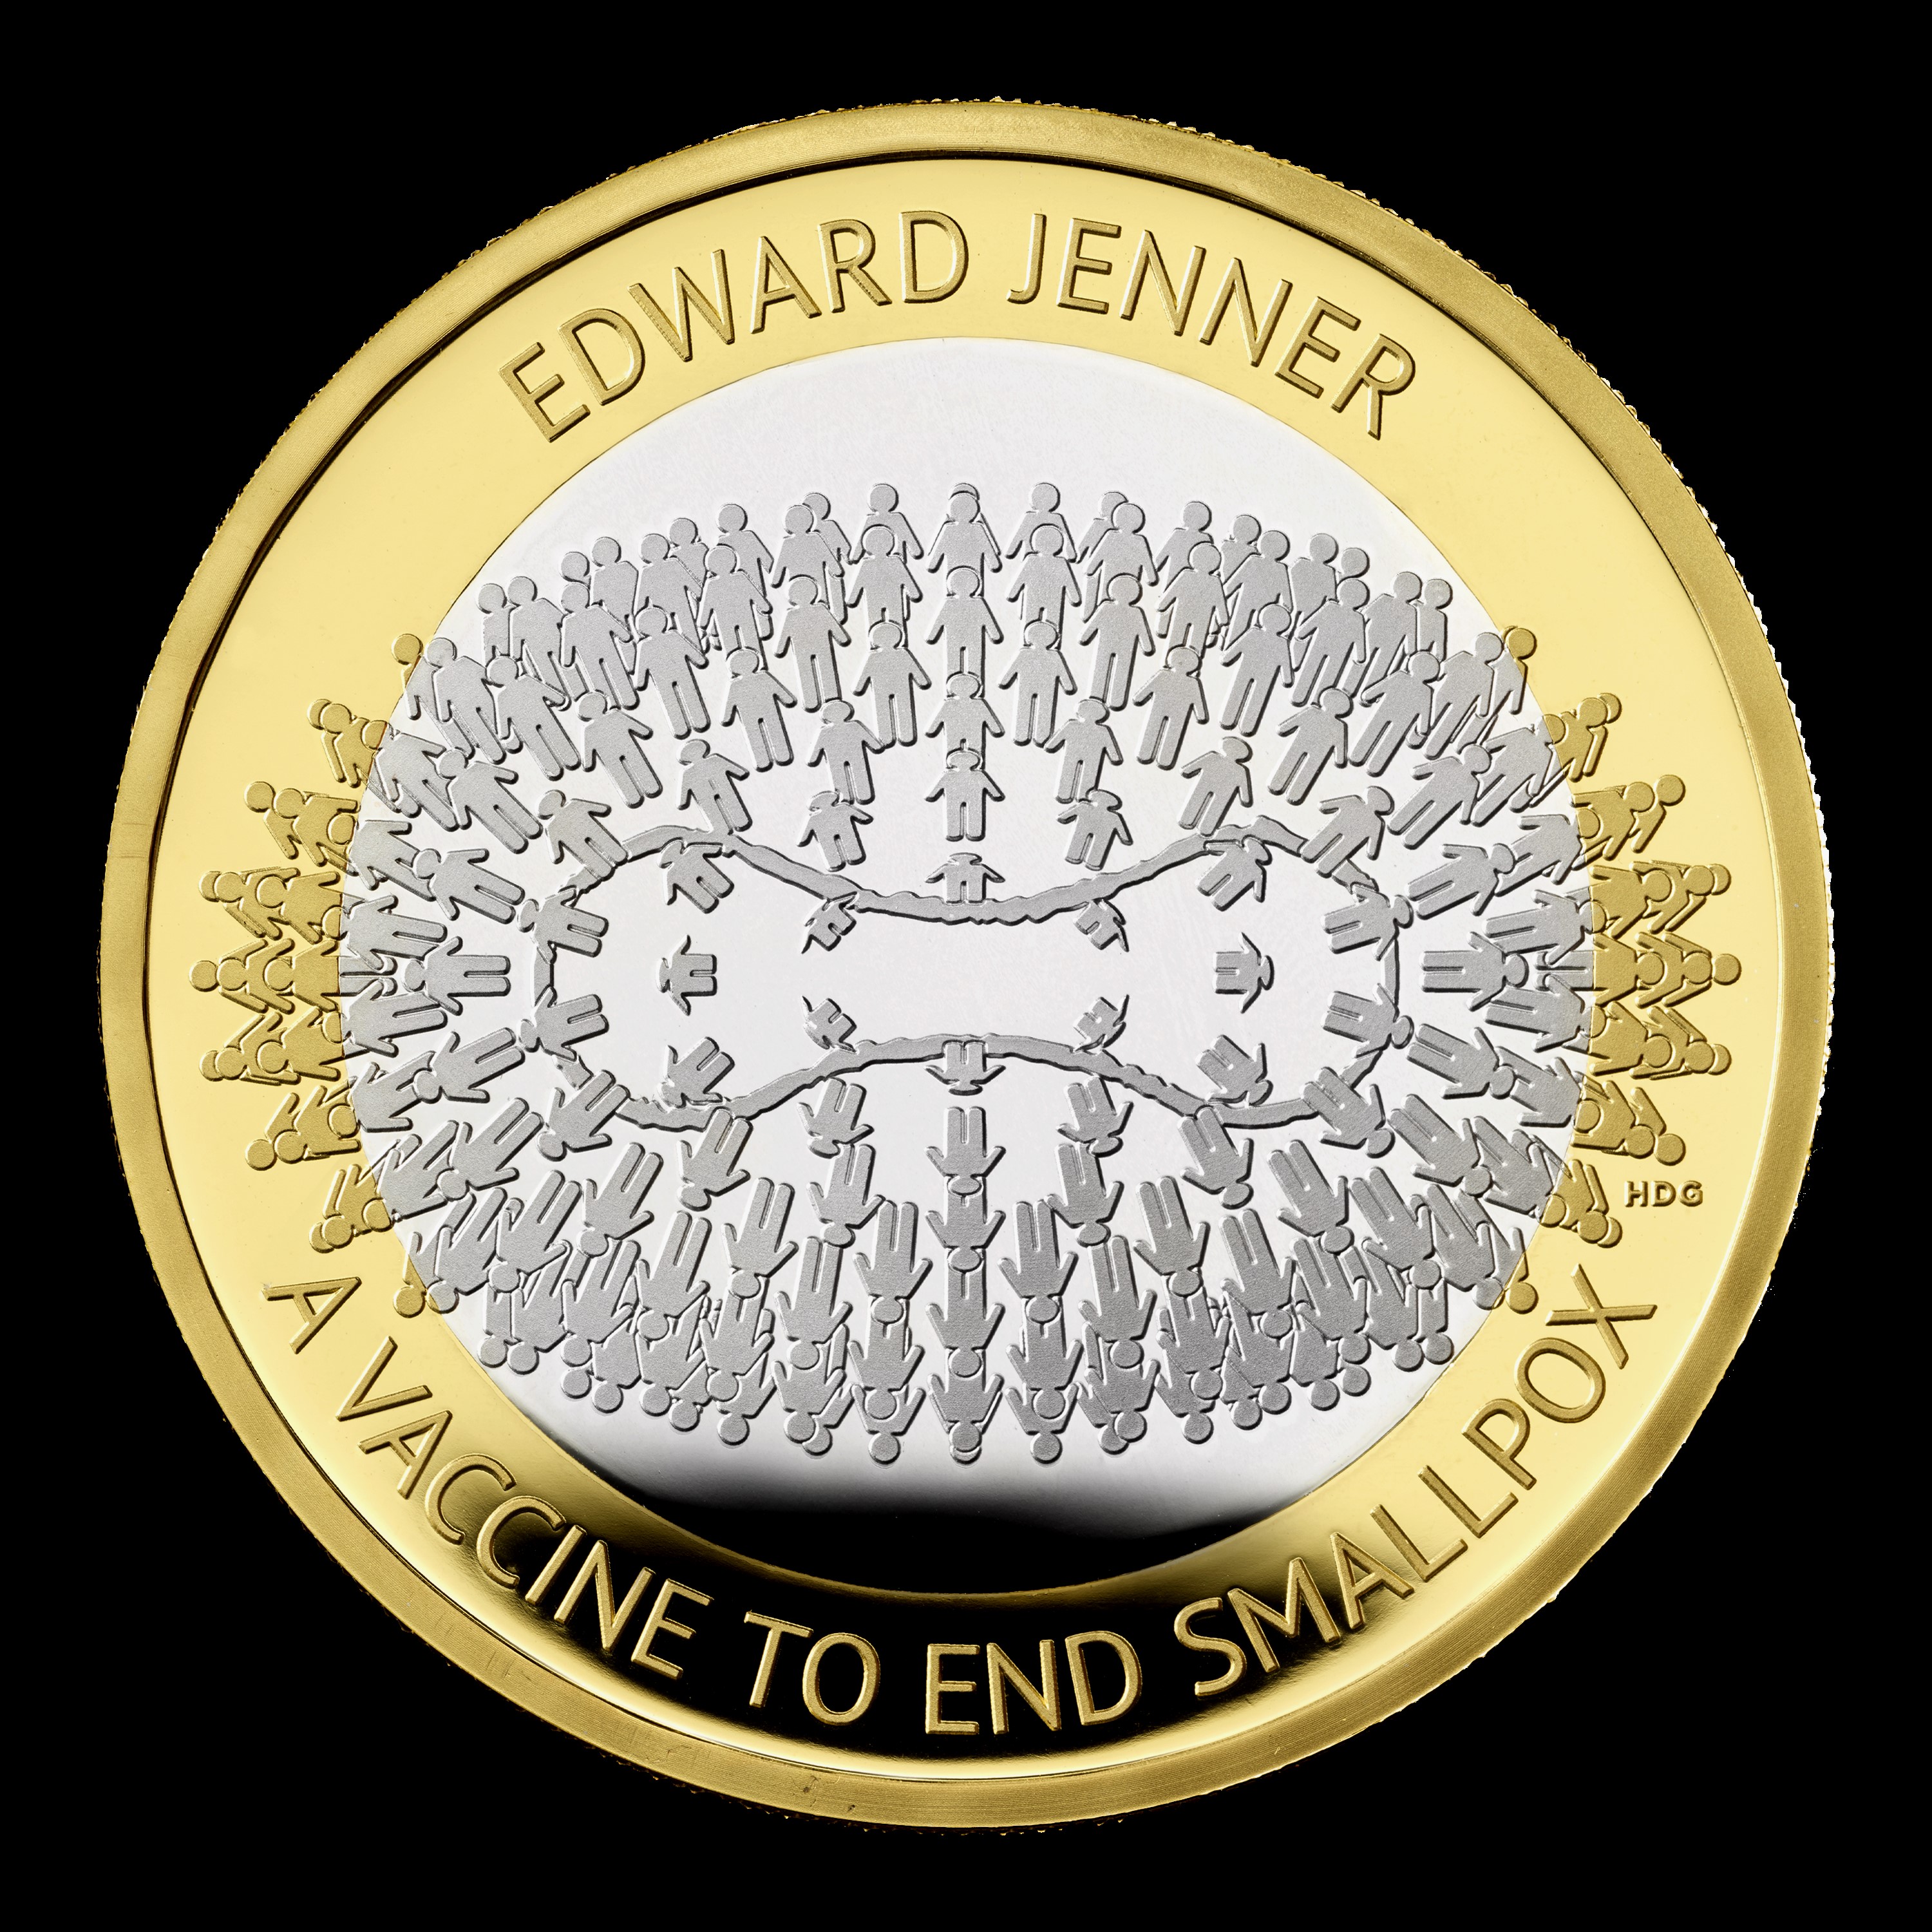 Edward Jenner coin